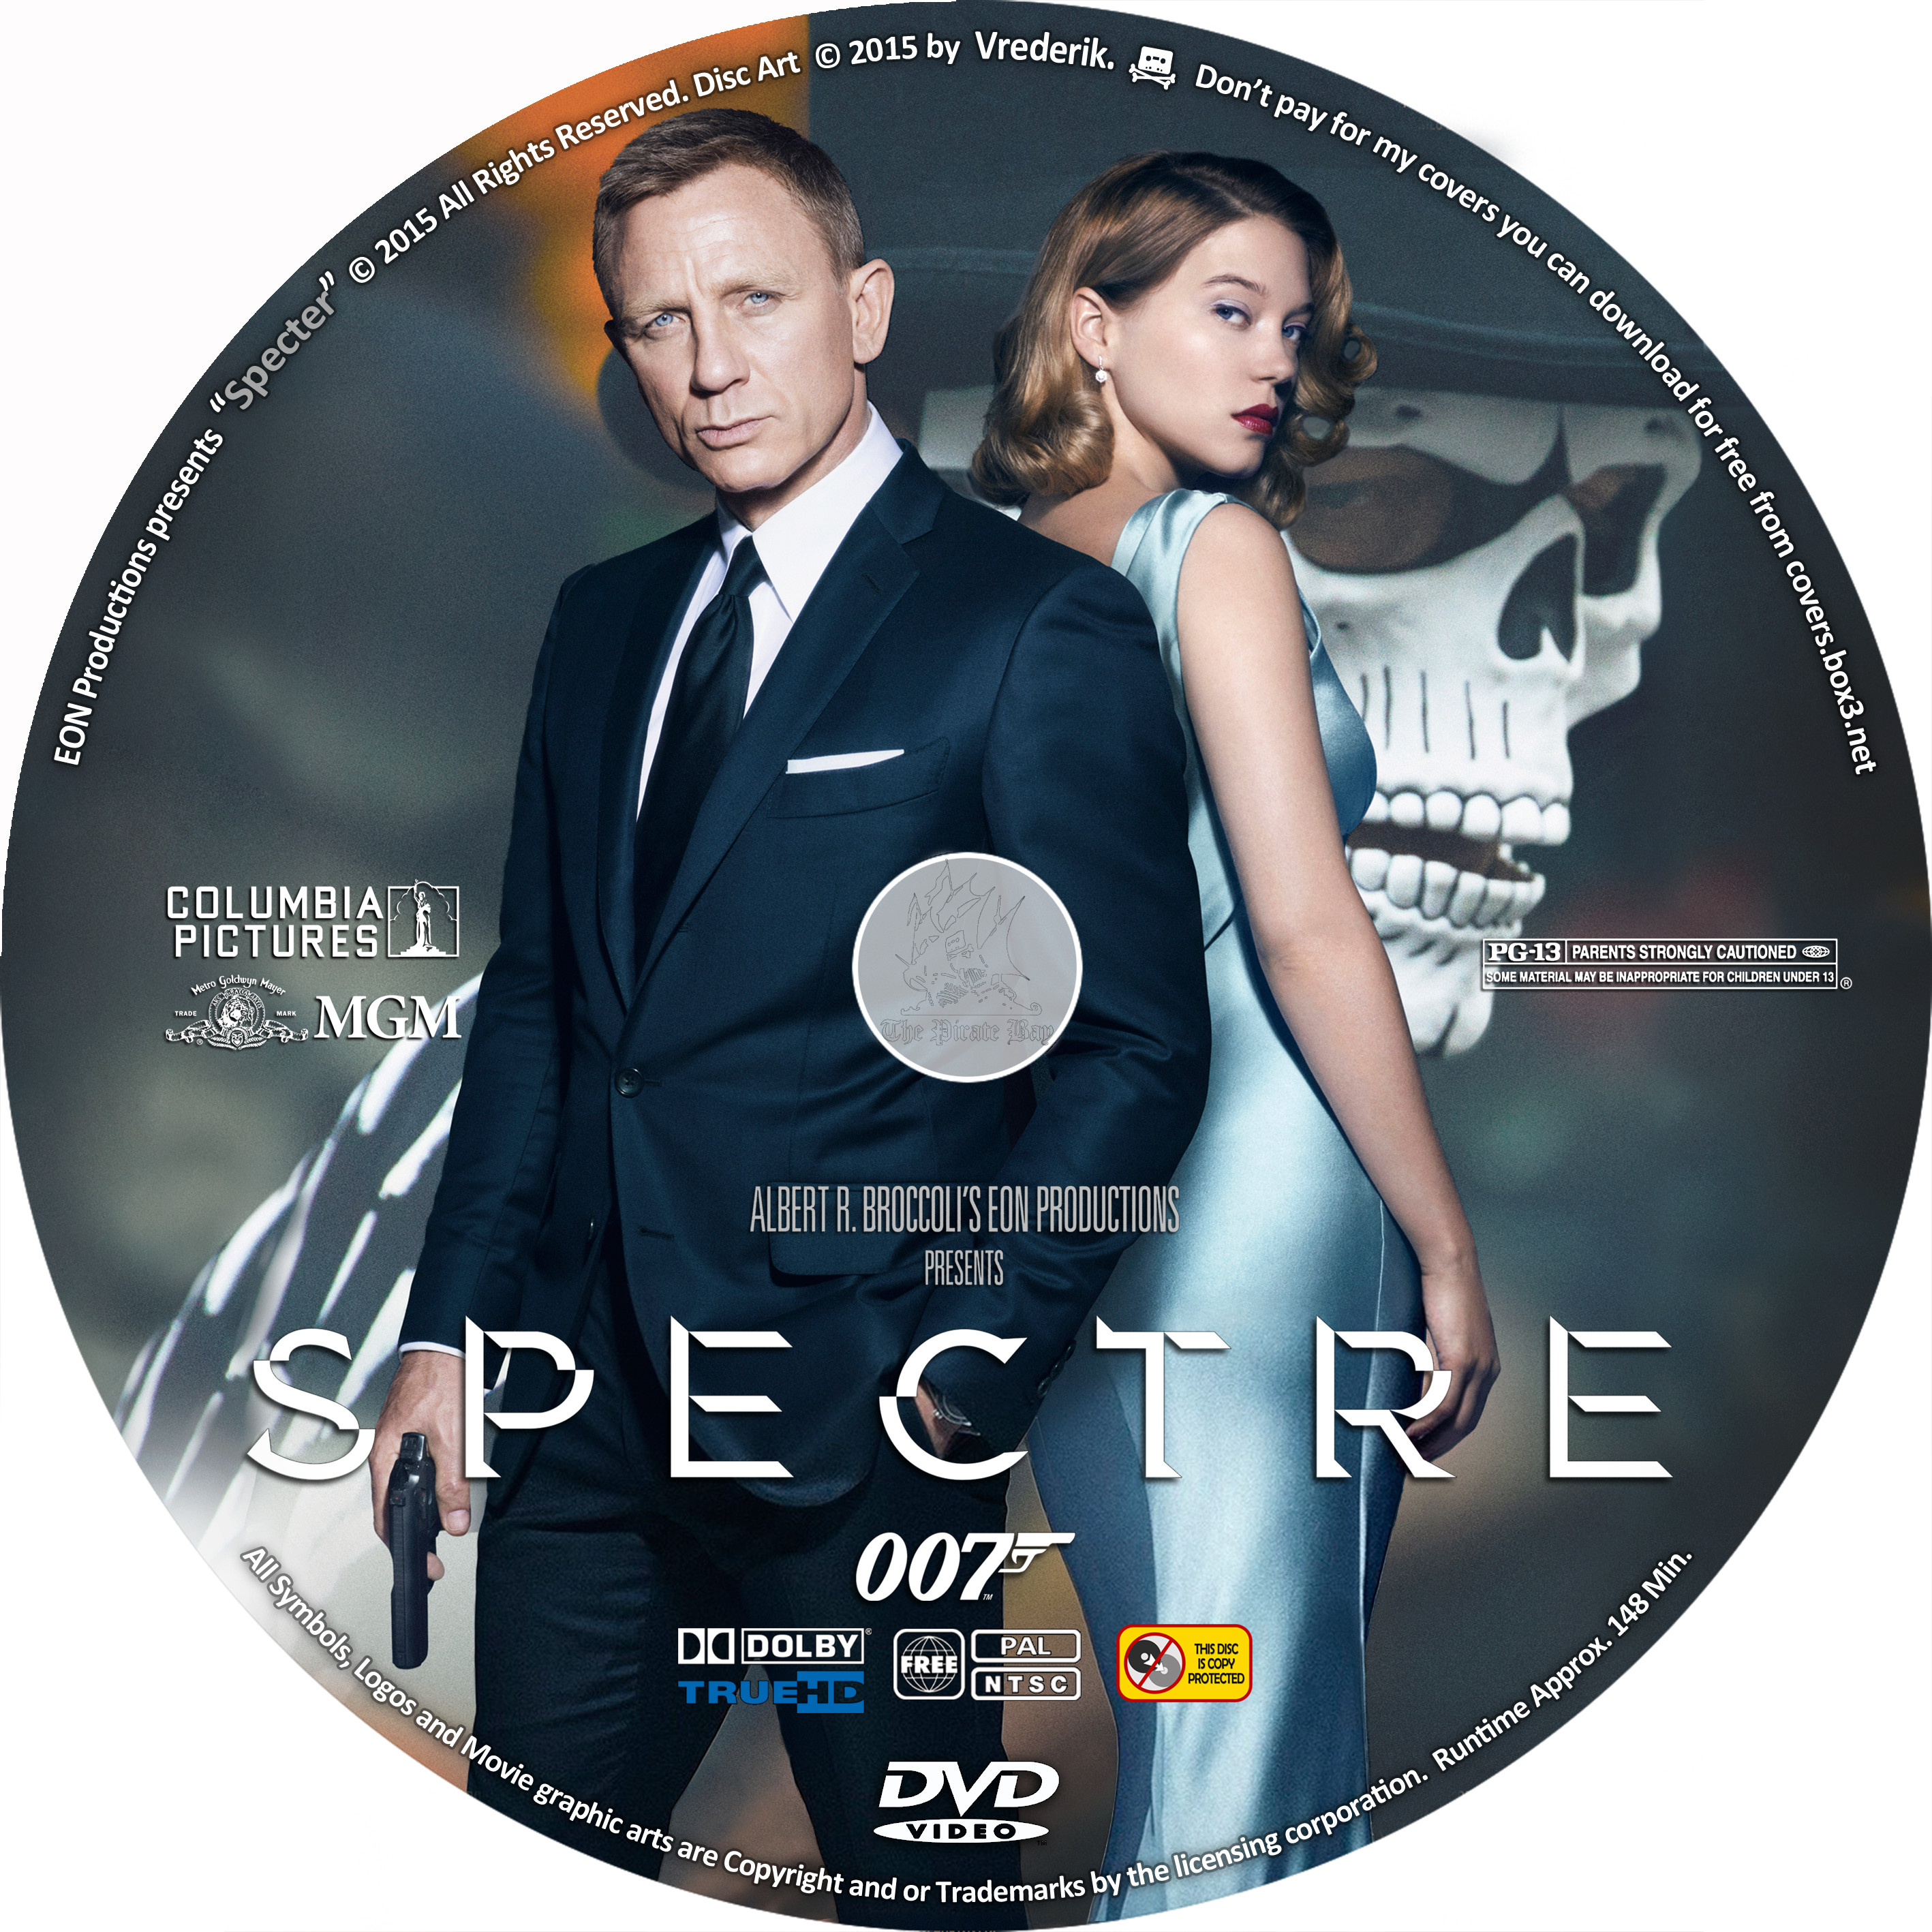 Spectre перевод. Spectre (2015) Blu-ray. Агент 007 спектр Леа Сейду. 007 Обложки спектр Spectre, 2015.